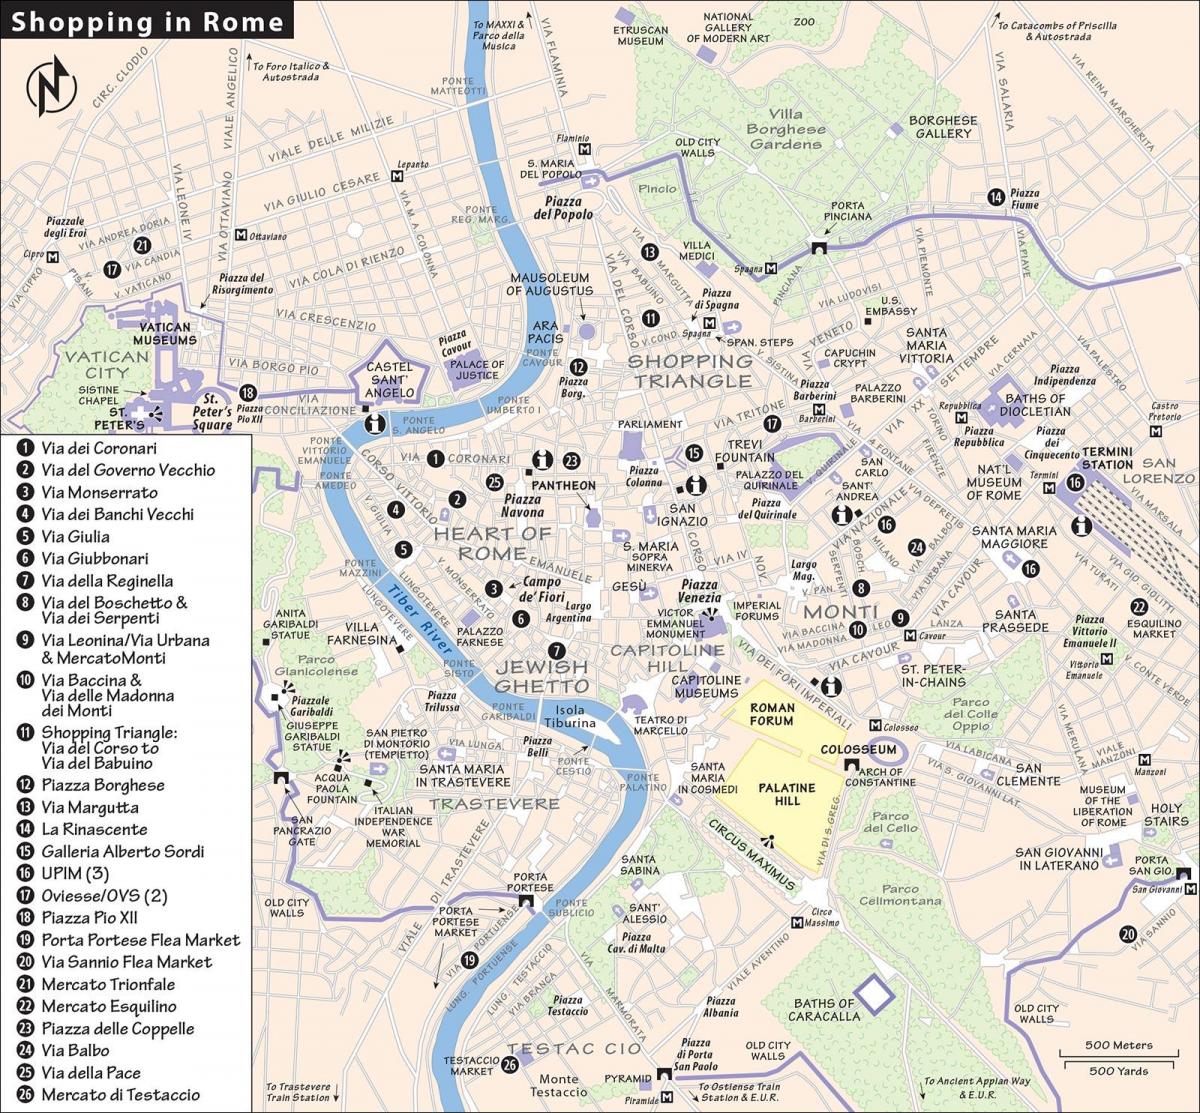 خريطة روما للتسوق